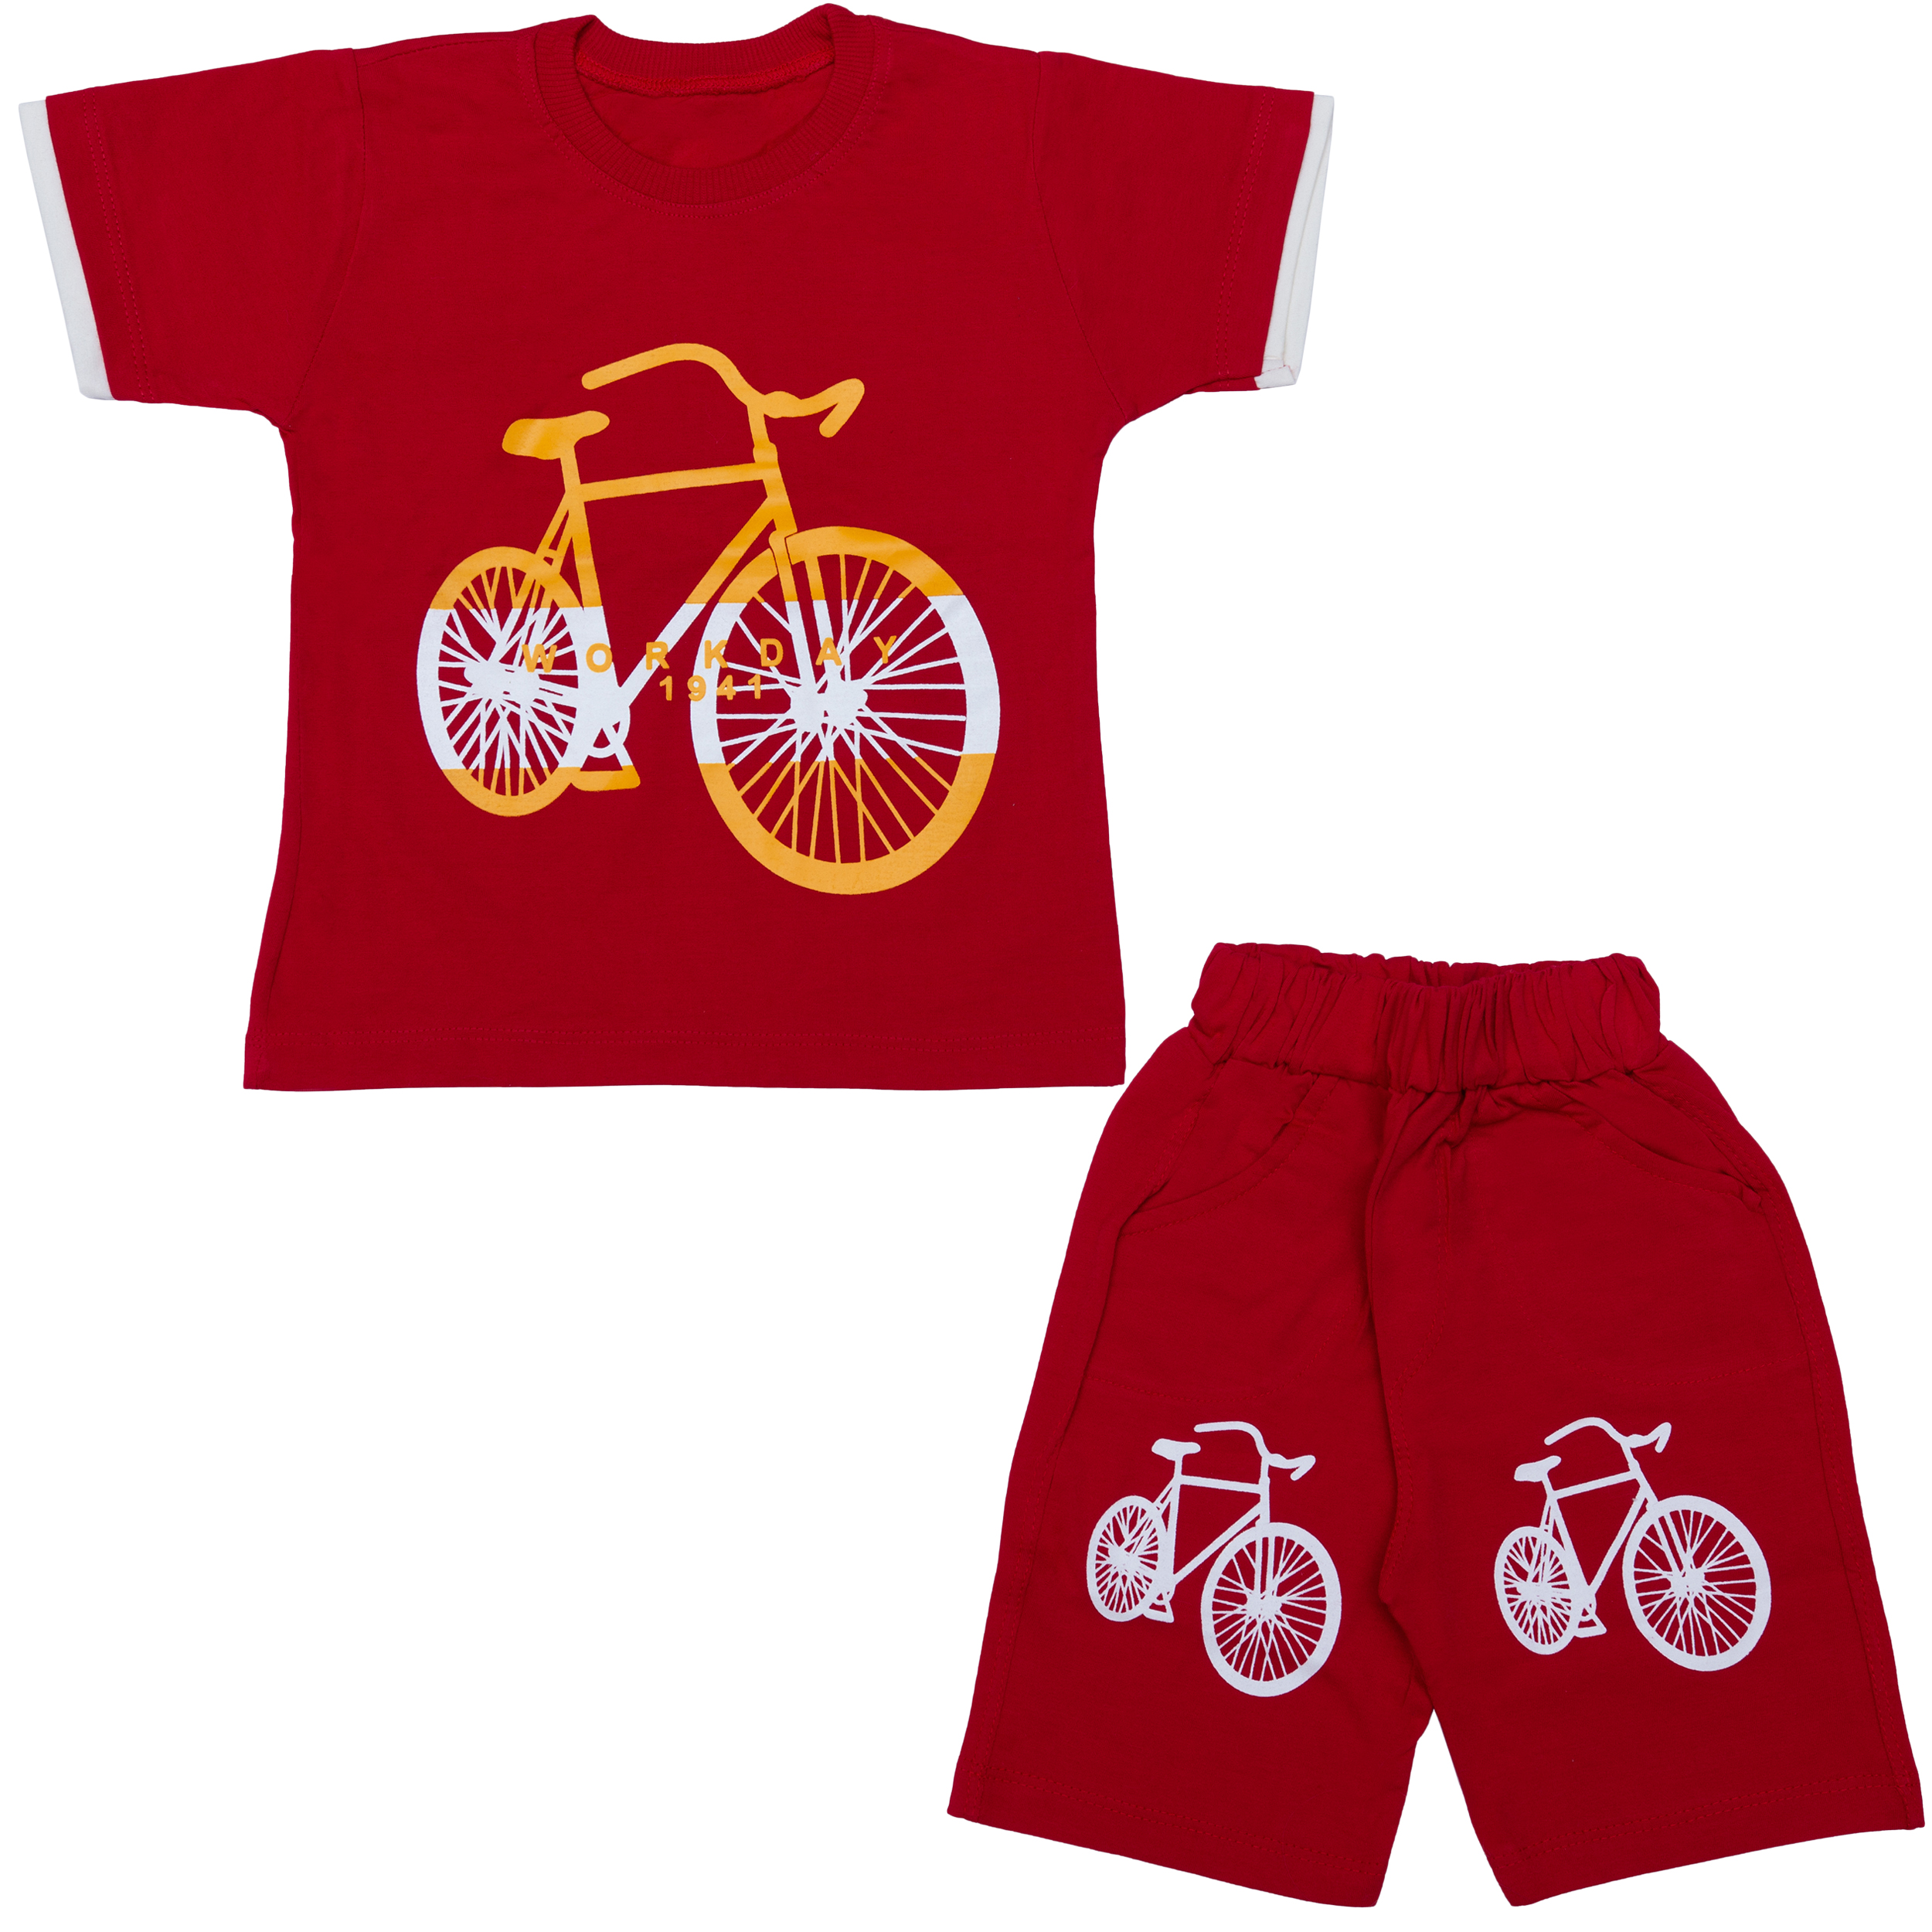 ست تیشرت و شلوارک پسرانه طرح دوچرخه کد 4 رنگ قرمز